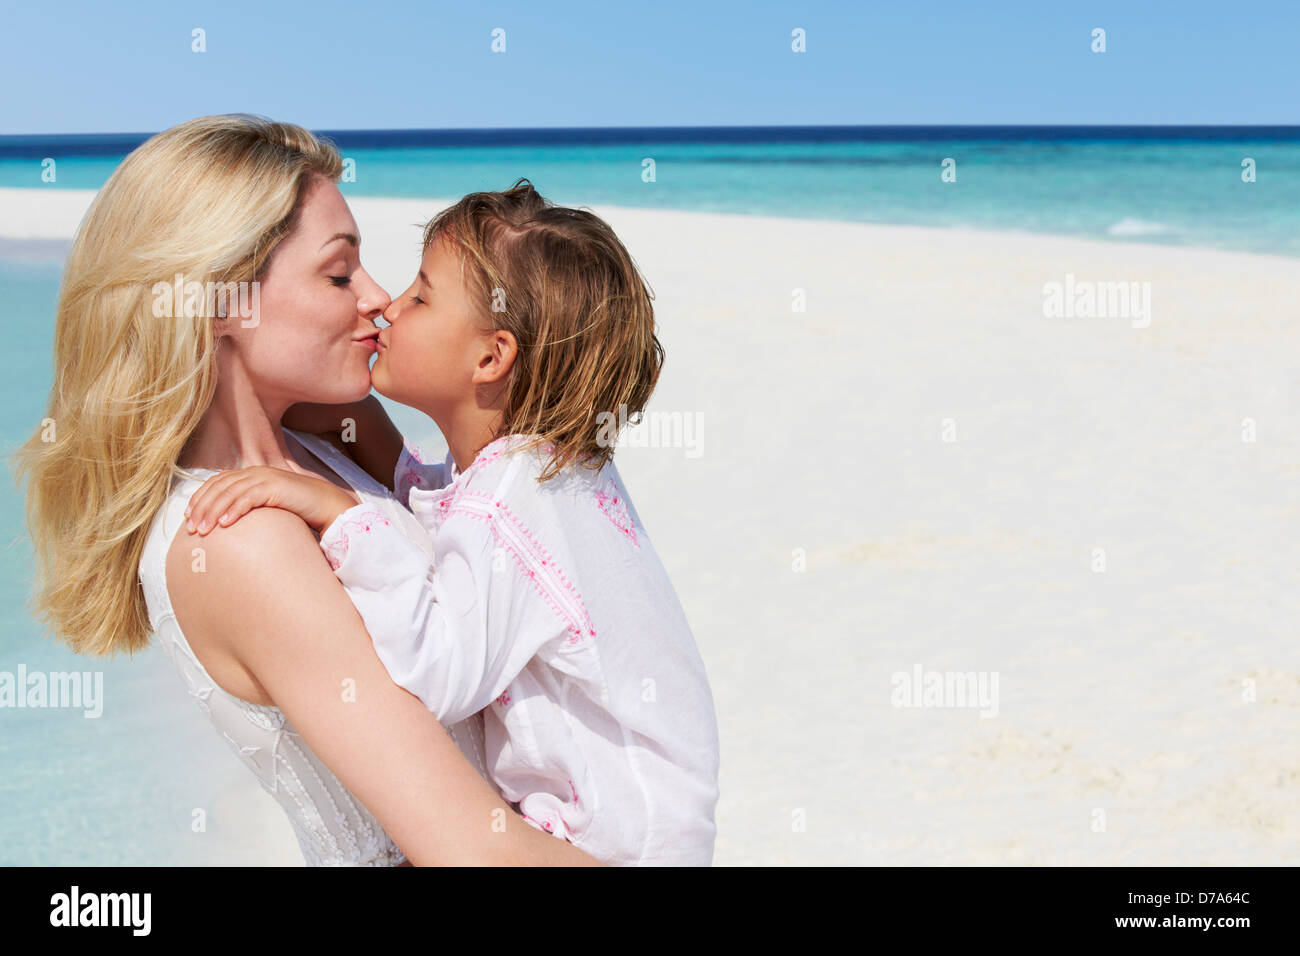 Мама и дочка целуются. Мама с дочкой поцелуй. Мама целует дочку. Дочь целует маму на пляже. Мама целуется с дочкой.